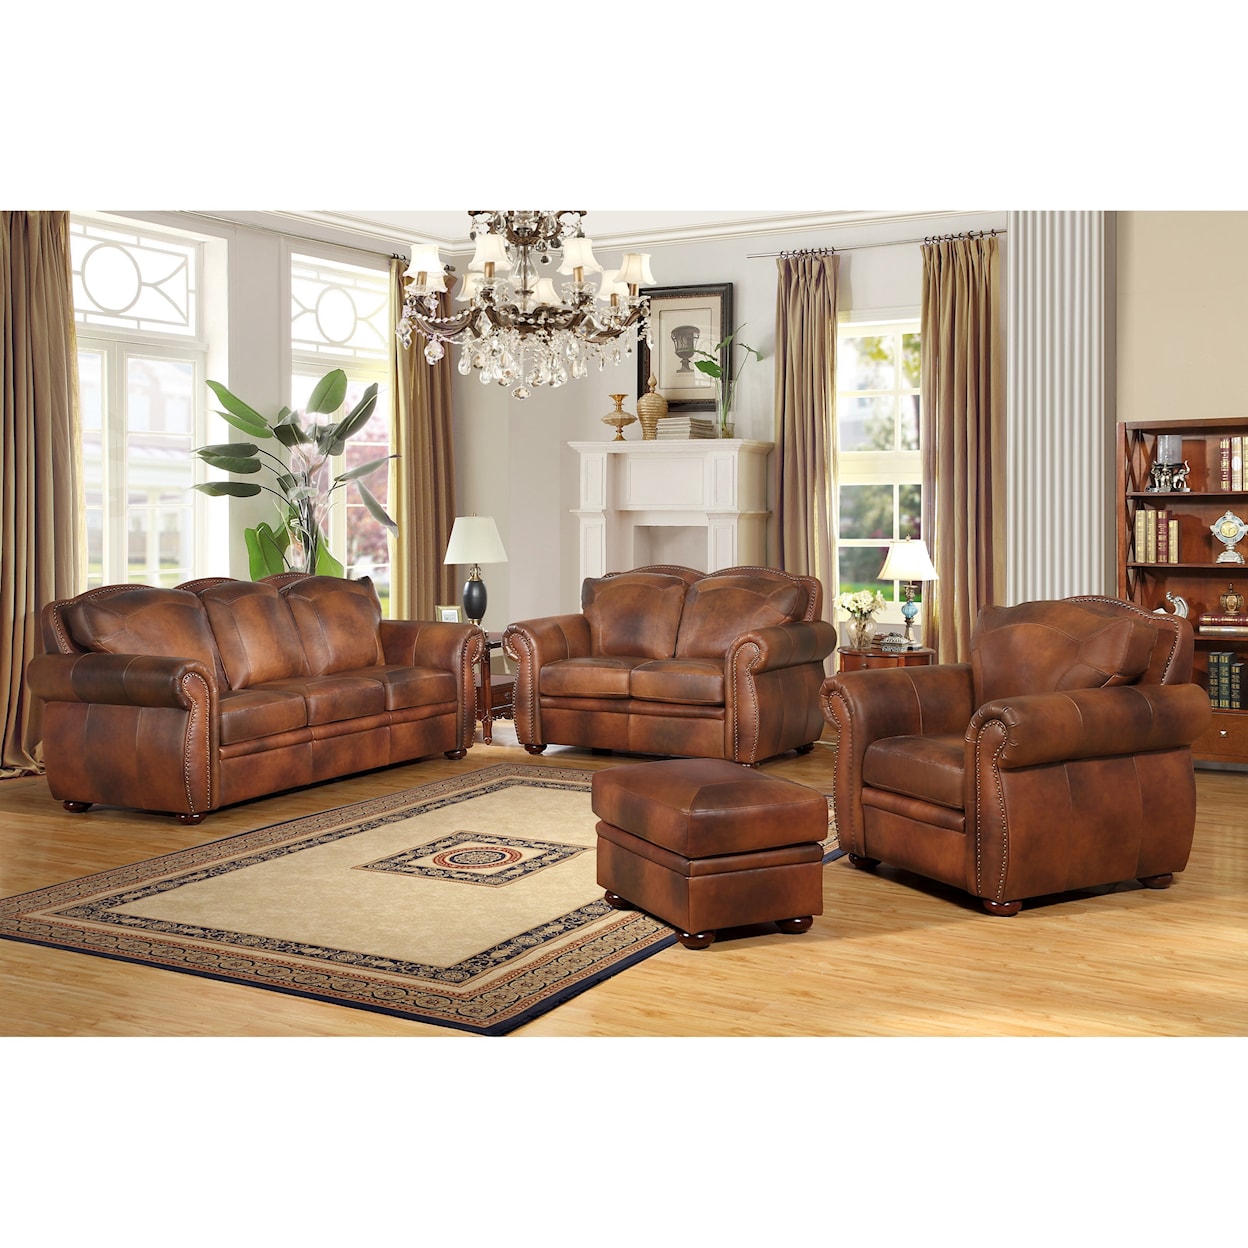 Carolina Leather Arizona Leather Sofa